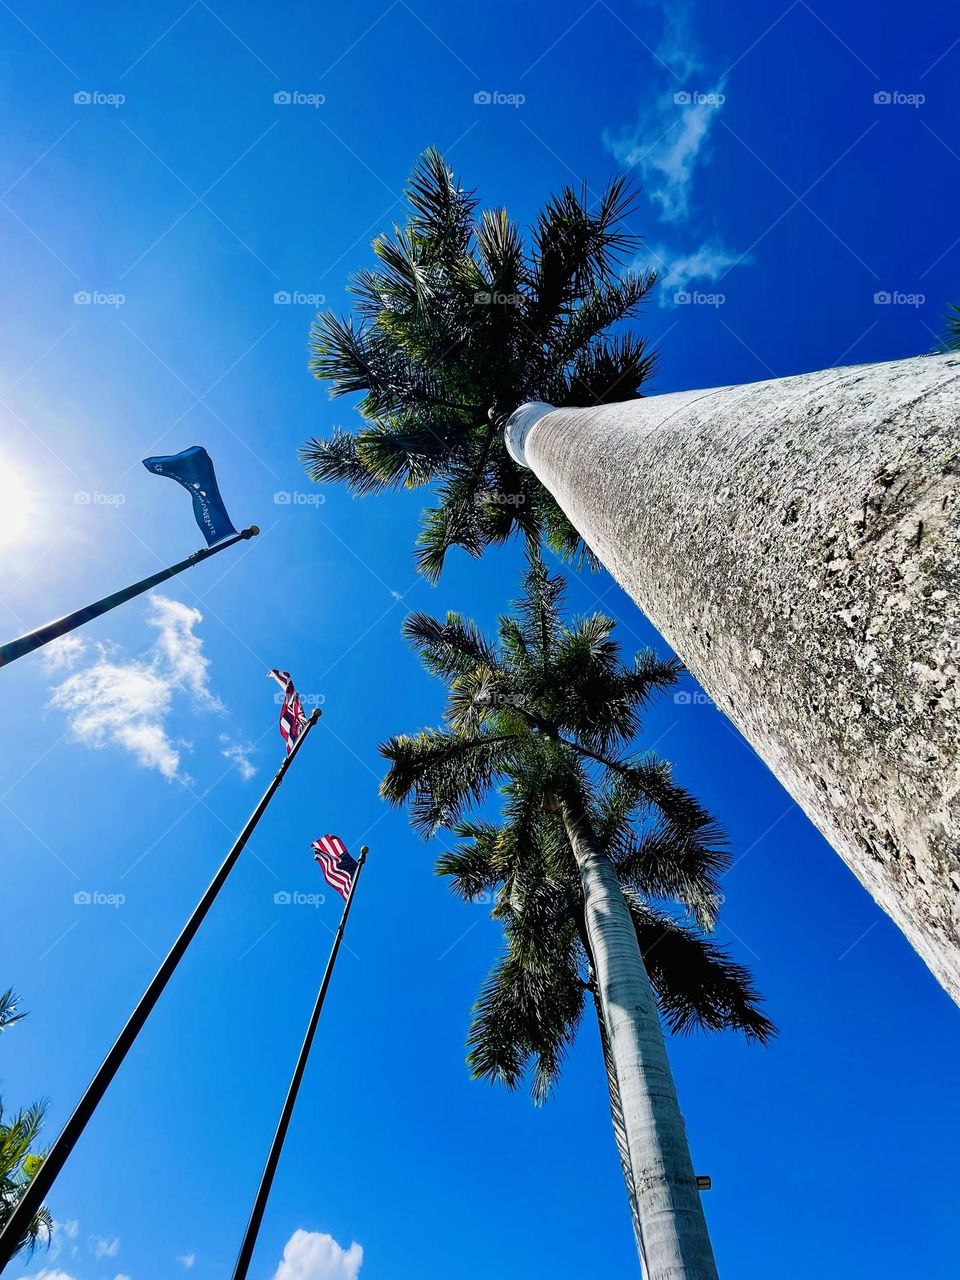 Flags and Palm Trees - Oahu, Hawaii